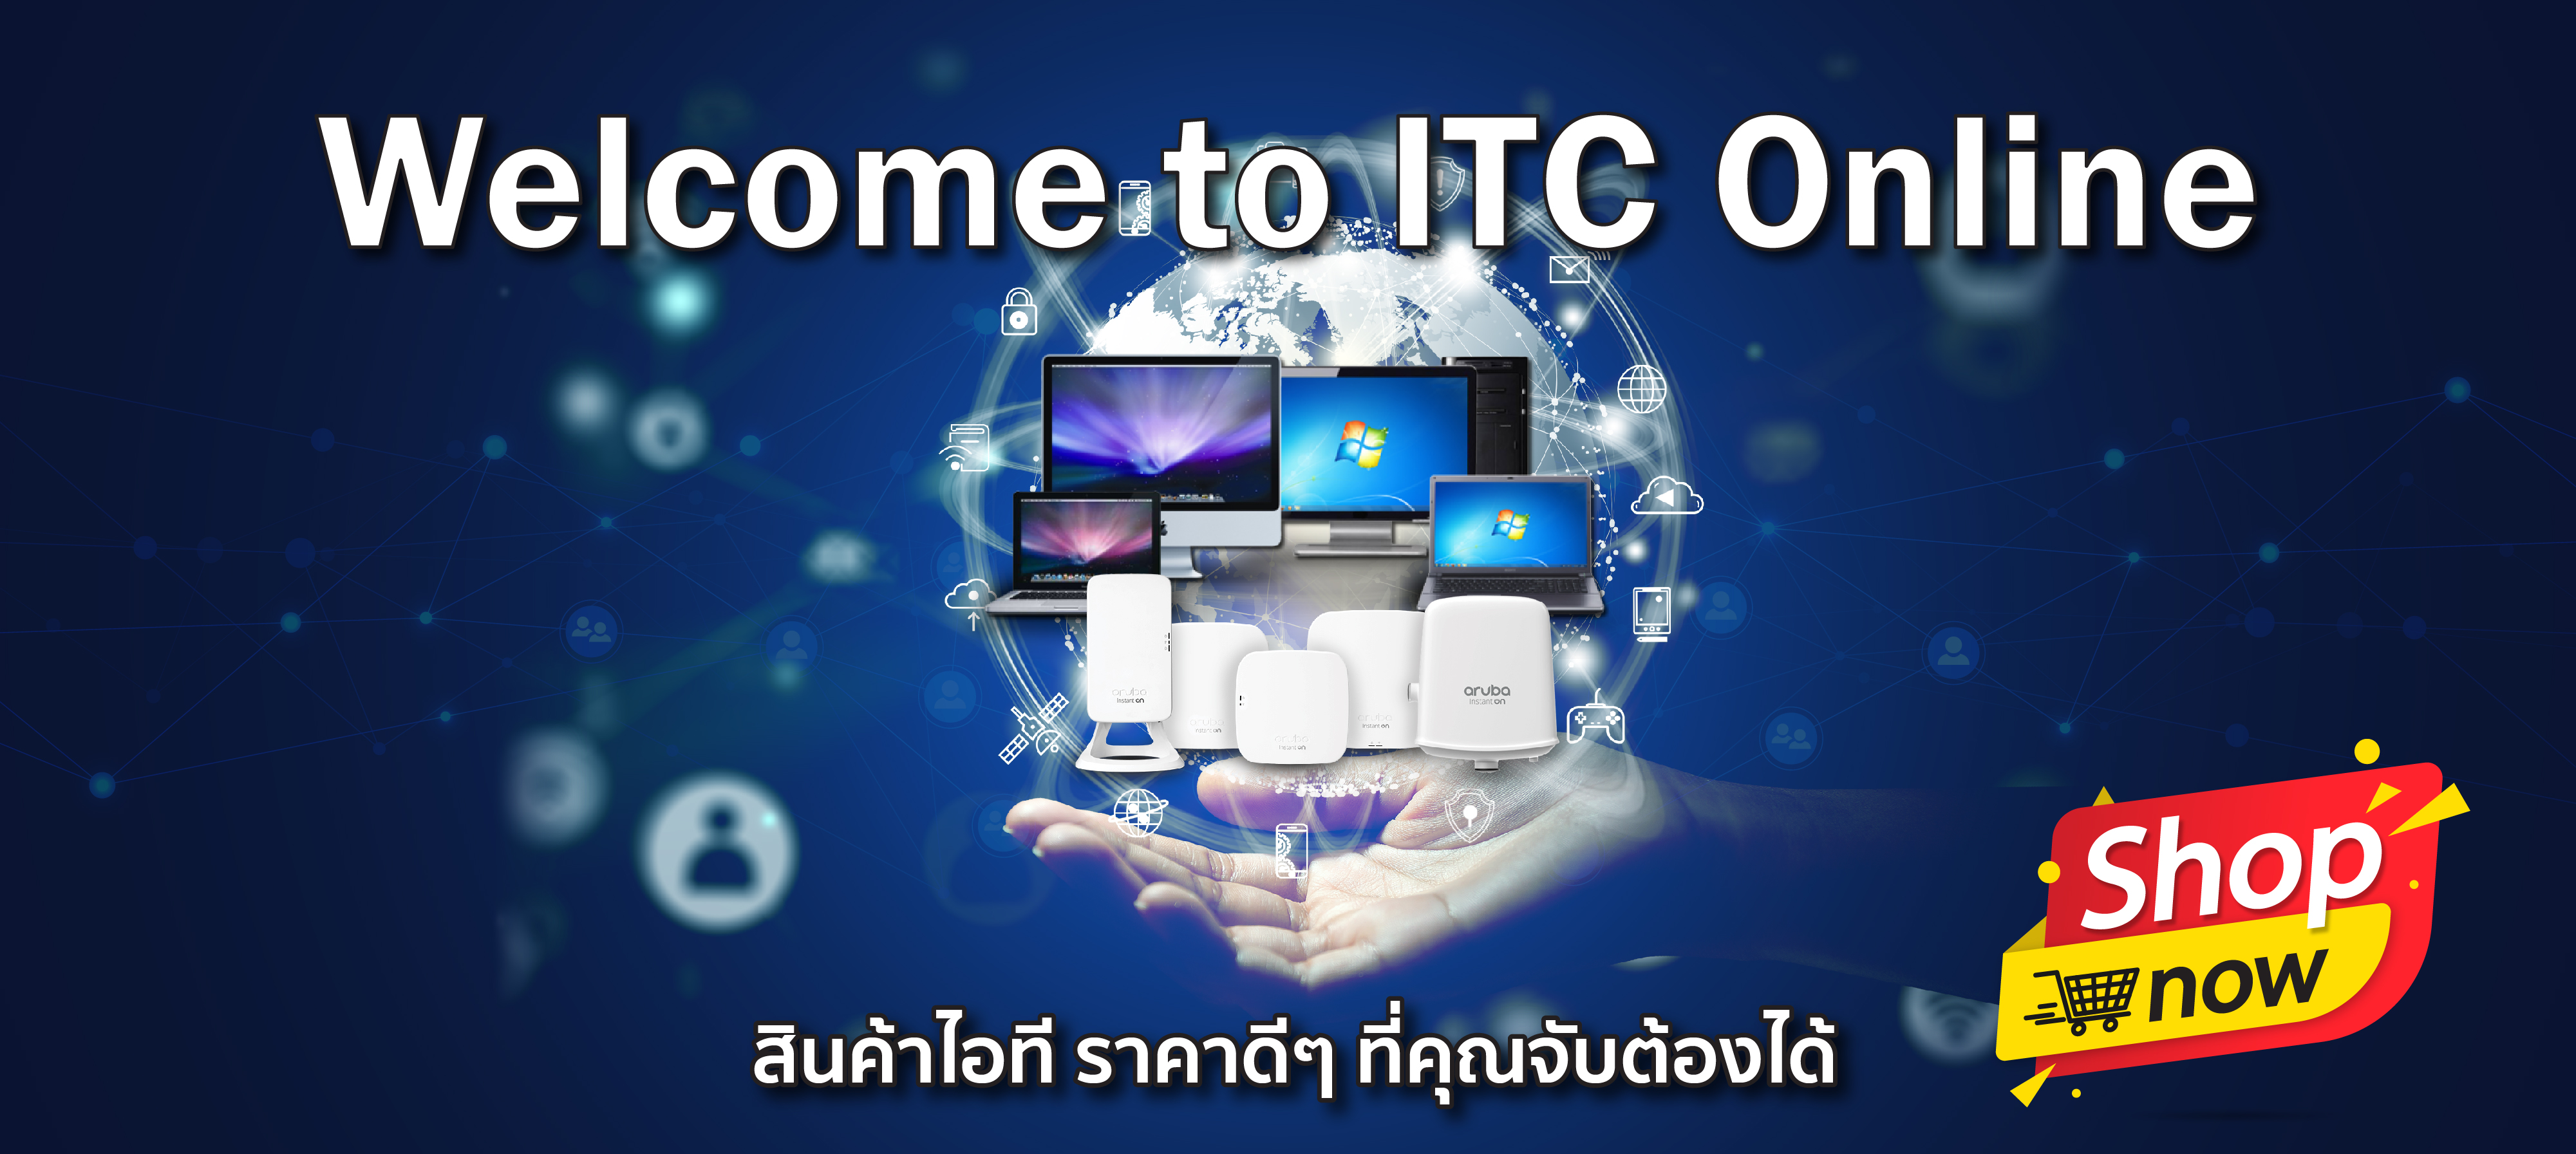 Online ITC